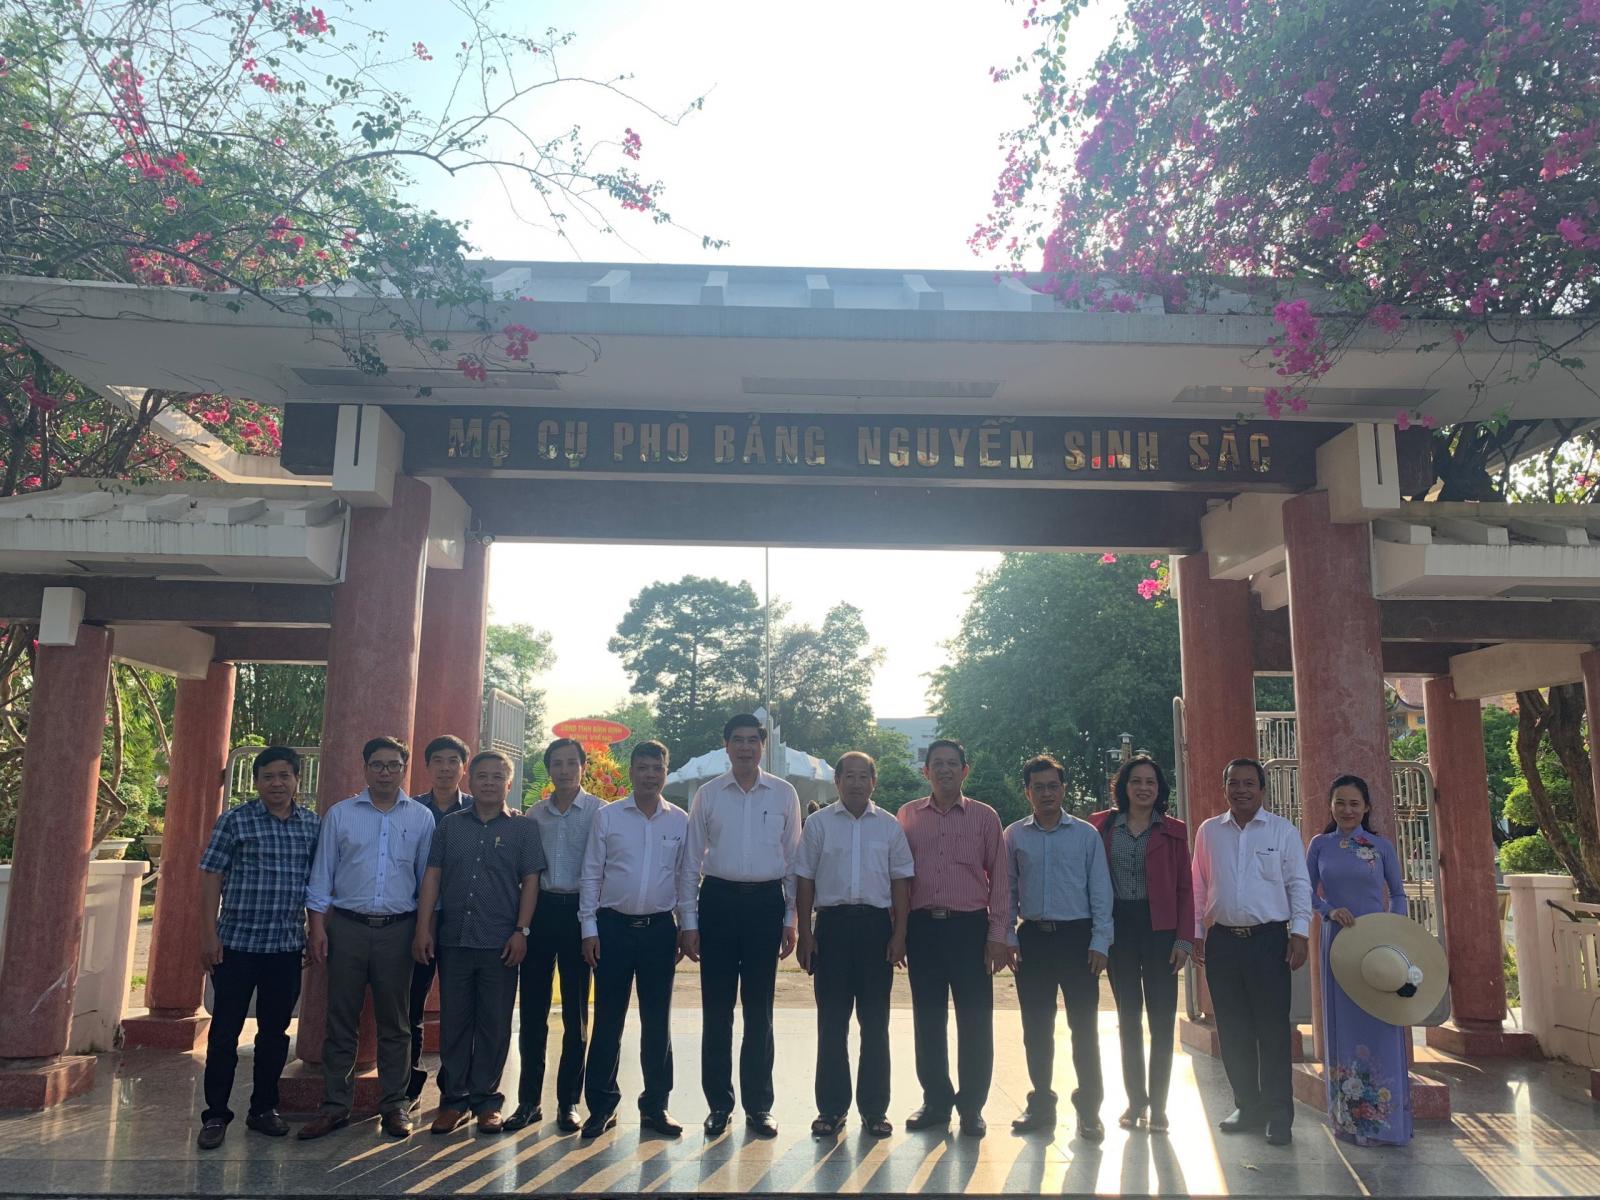 Đoàn công tác UBND tỉnh Bình Định viếng dâng hương Cụ Phó bảng Nguyễn Sinh Sắc